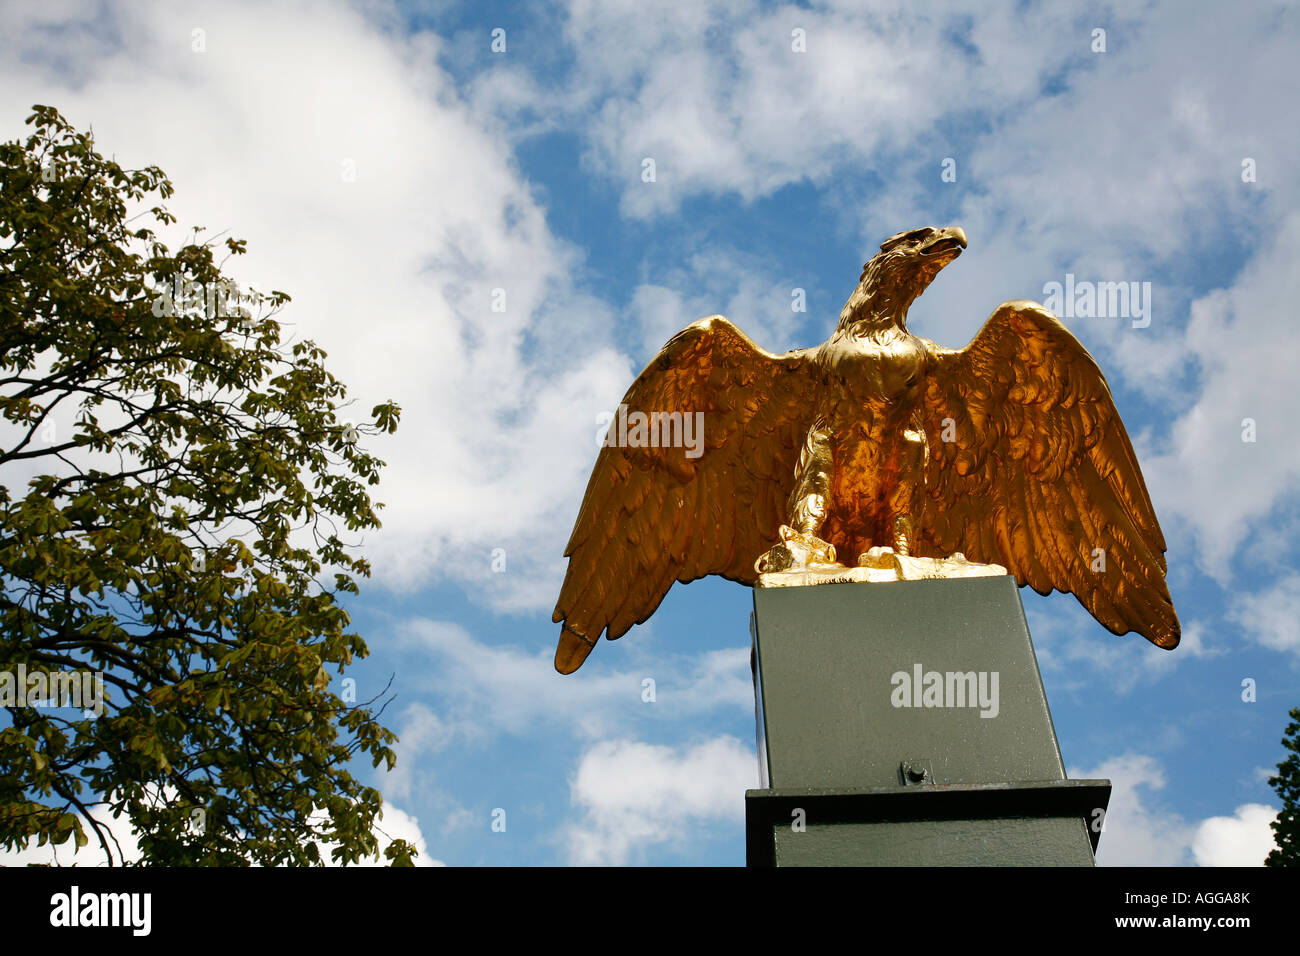 Eagle statue en bronze à l'entrée du Zoo Artis gates dans Amsterdam Pays-Bas Banque D'Images